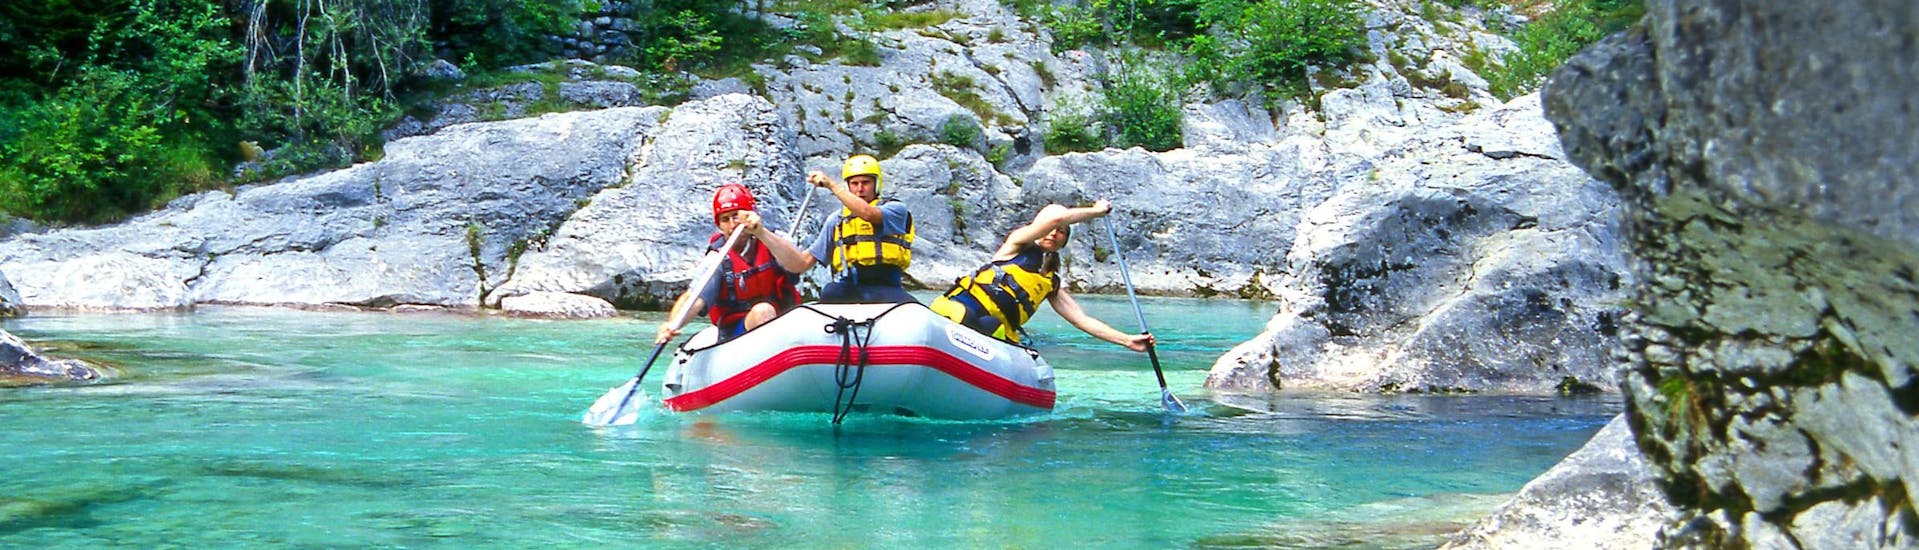 Soča-vallei: Een groep jongeren geniet van een wildwateravontuur in een van de hotspots voor rafting.